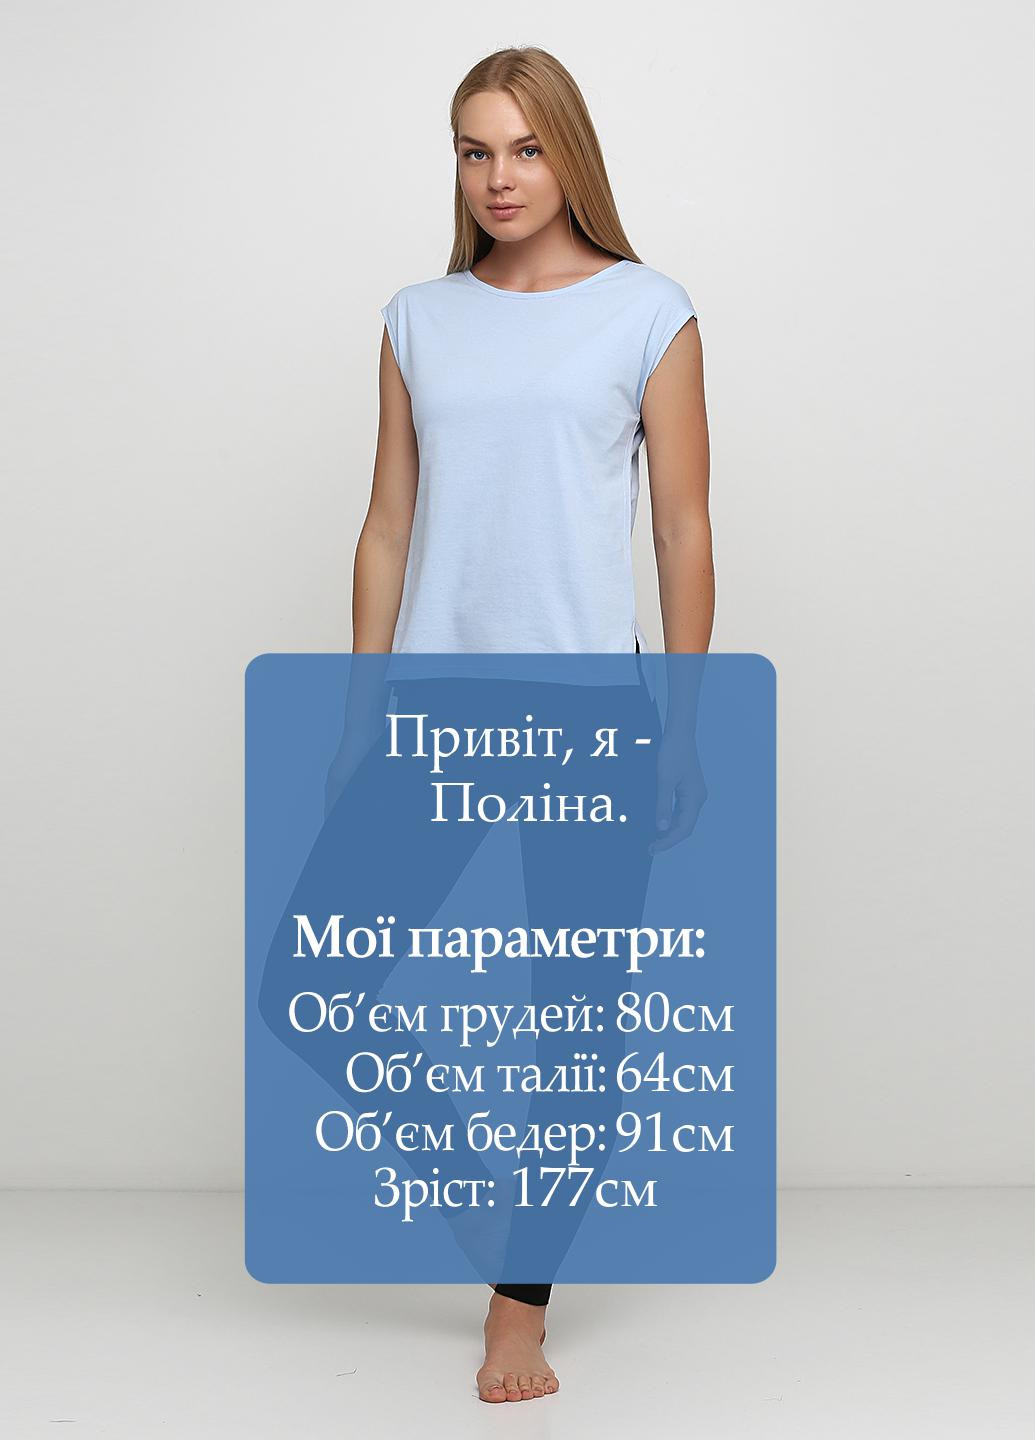 Голубой демисезонный комплект (футболка, лосины) Роза